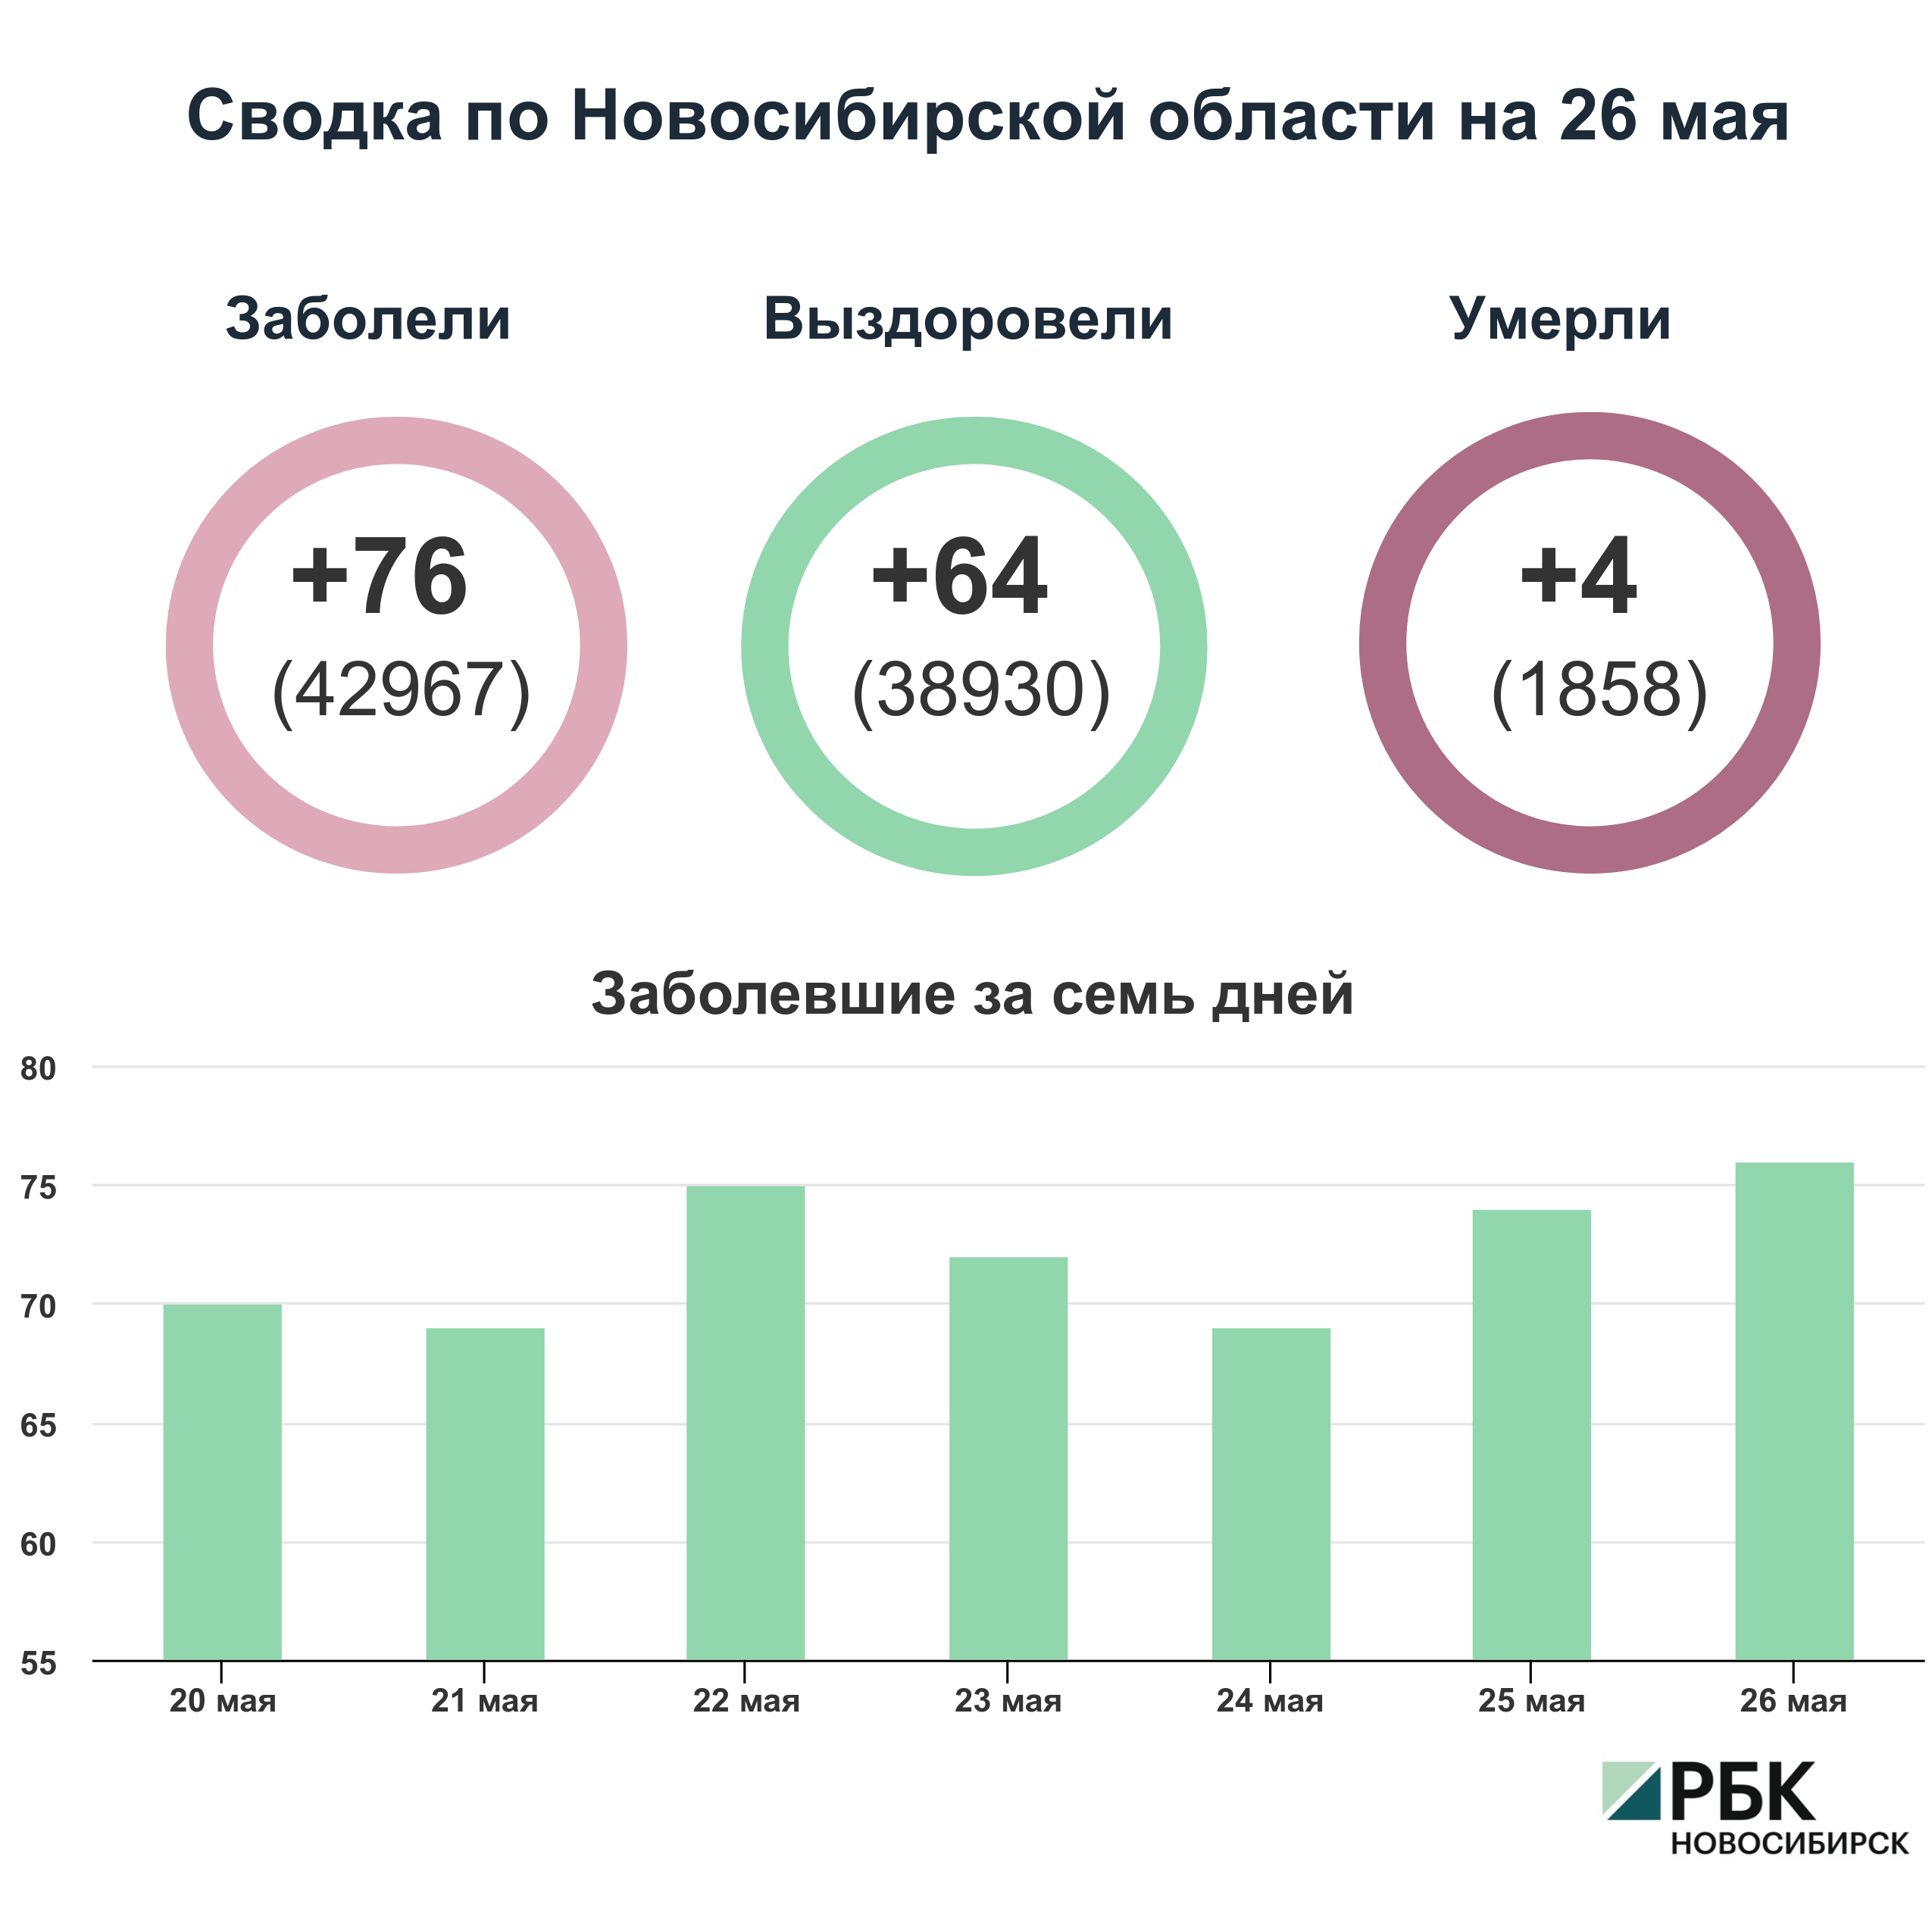 Коронавирус в Новосибирске: сводка на 26 мая